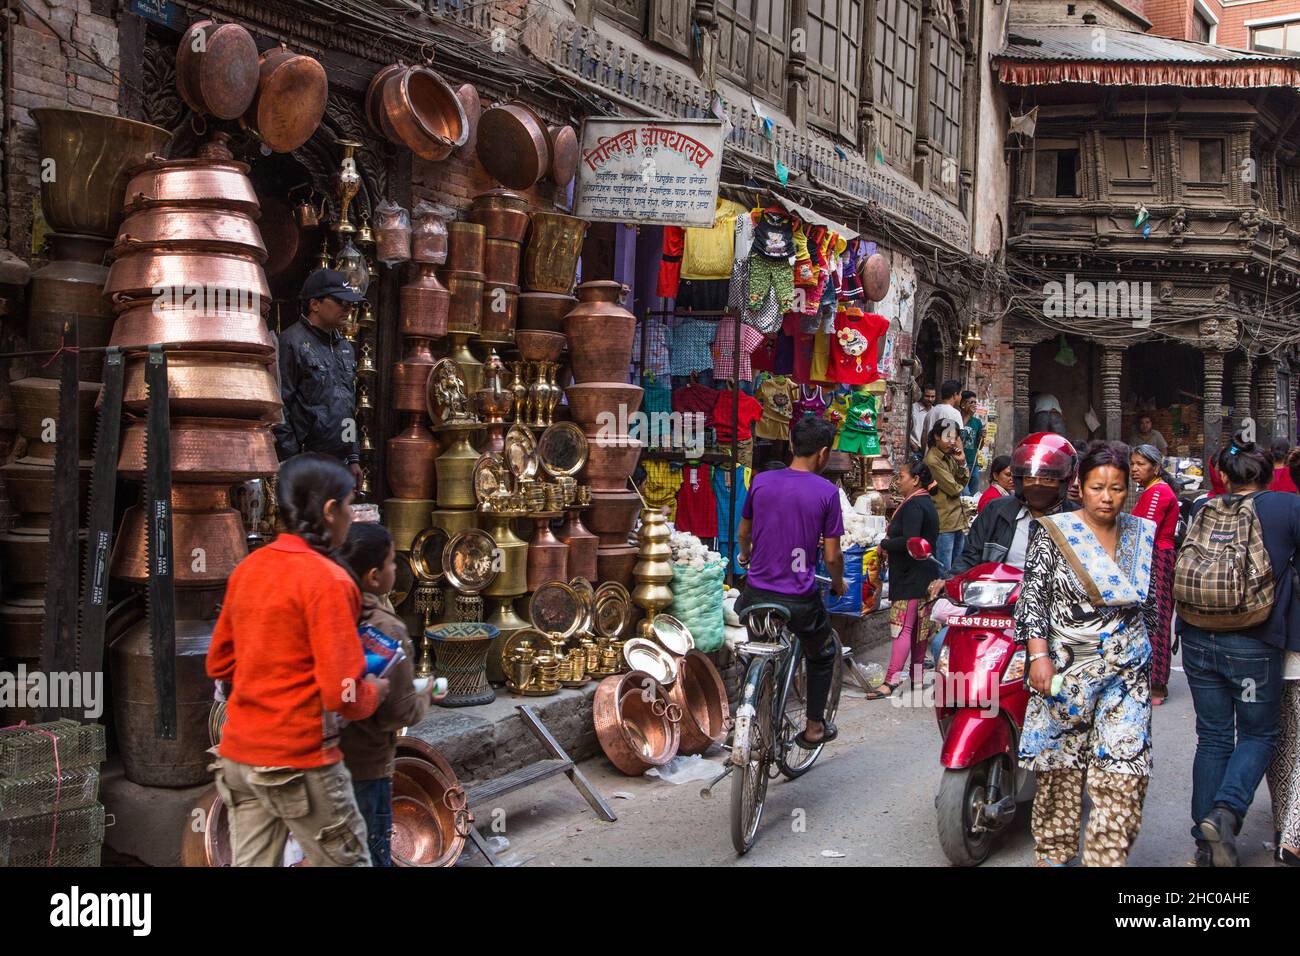 A busy street scene in front of a shop selling copperware in a neighborhood in Kathmandu, Nepal. Stock Photo